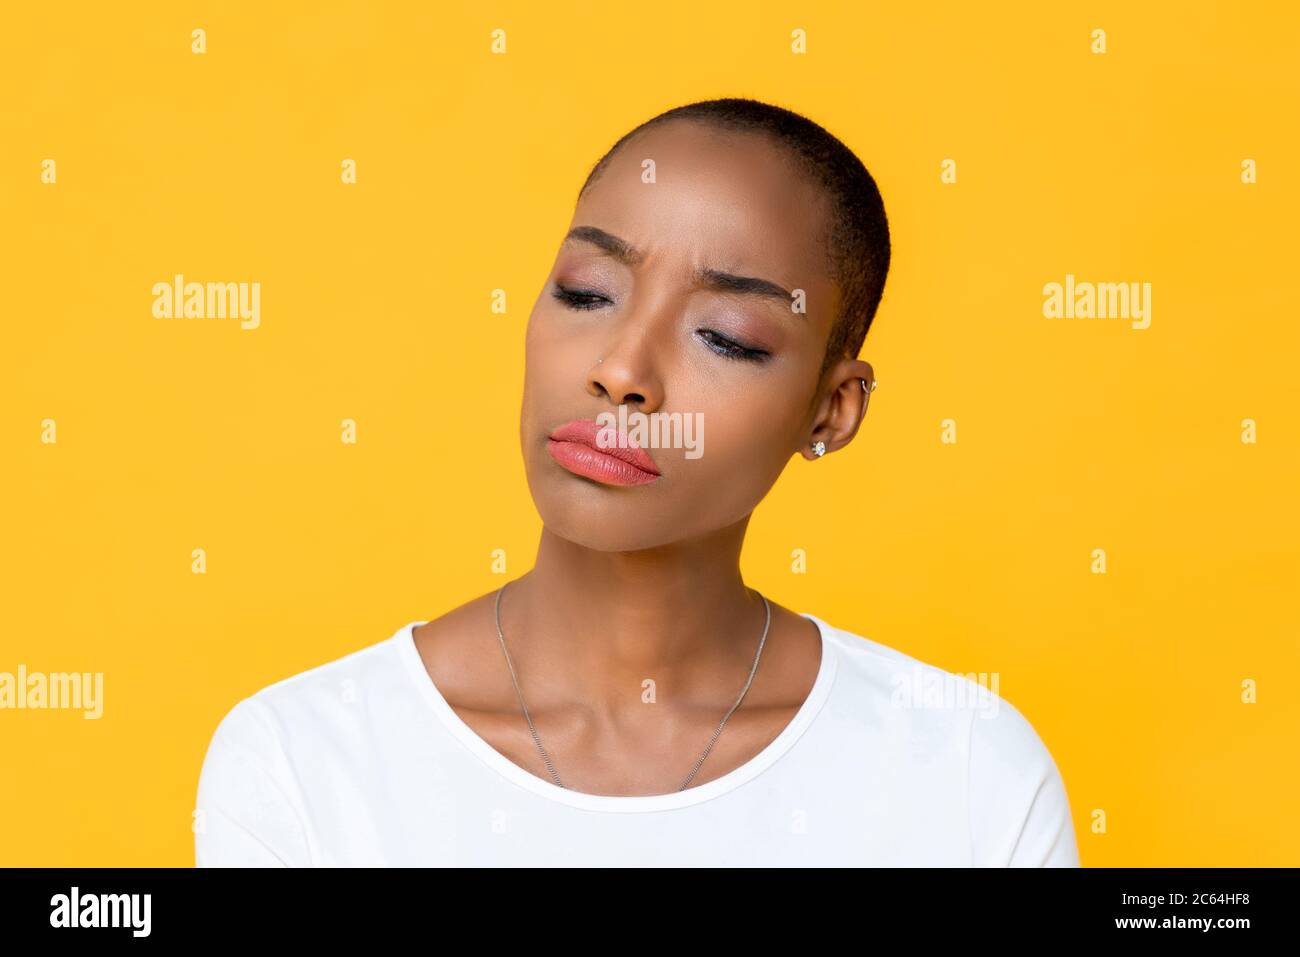 Nahaufnahme Porträt unglücklicher junger afroamerikanischer Frau denken, die sich gelangweilt und aufgeregt in isolierten Studio gelben Hintergrund Stockfoto